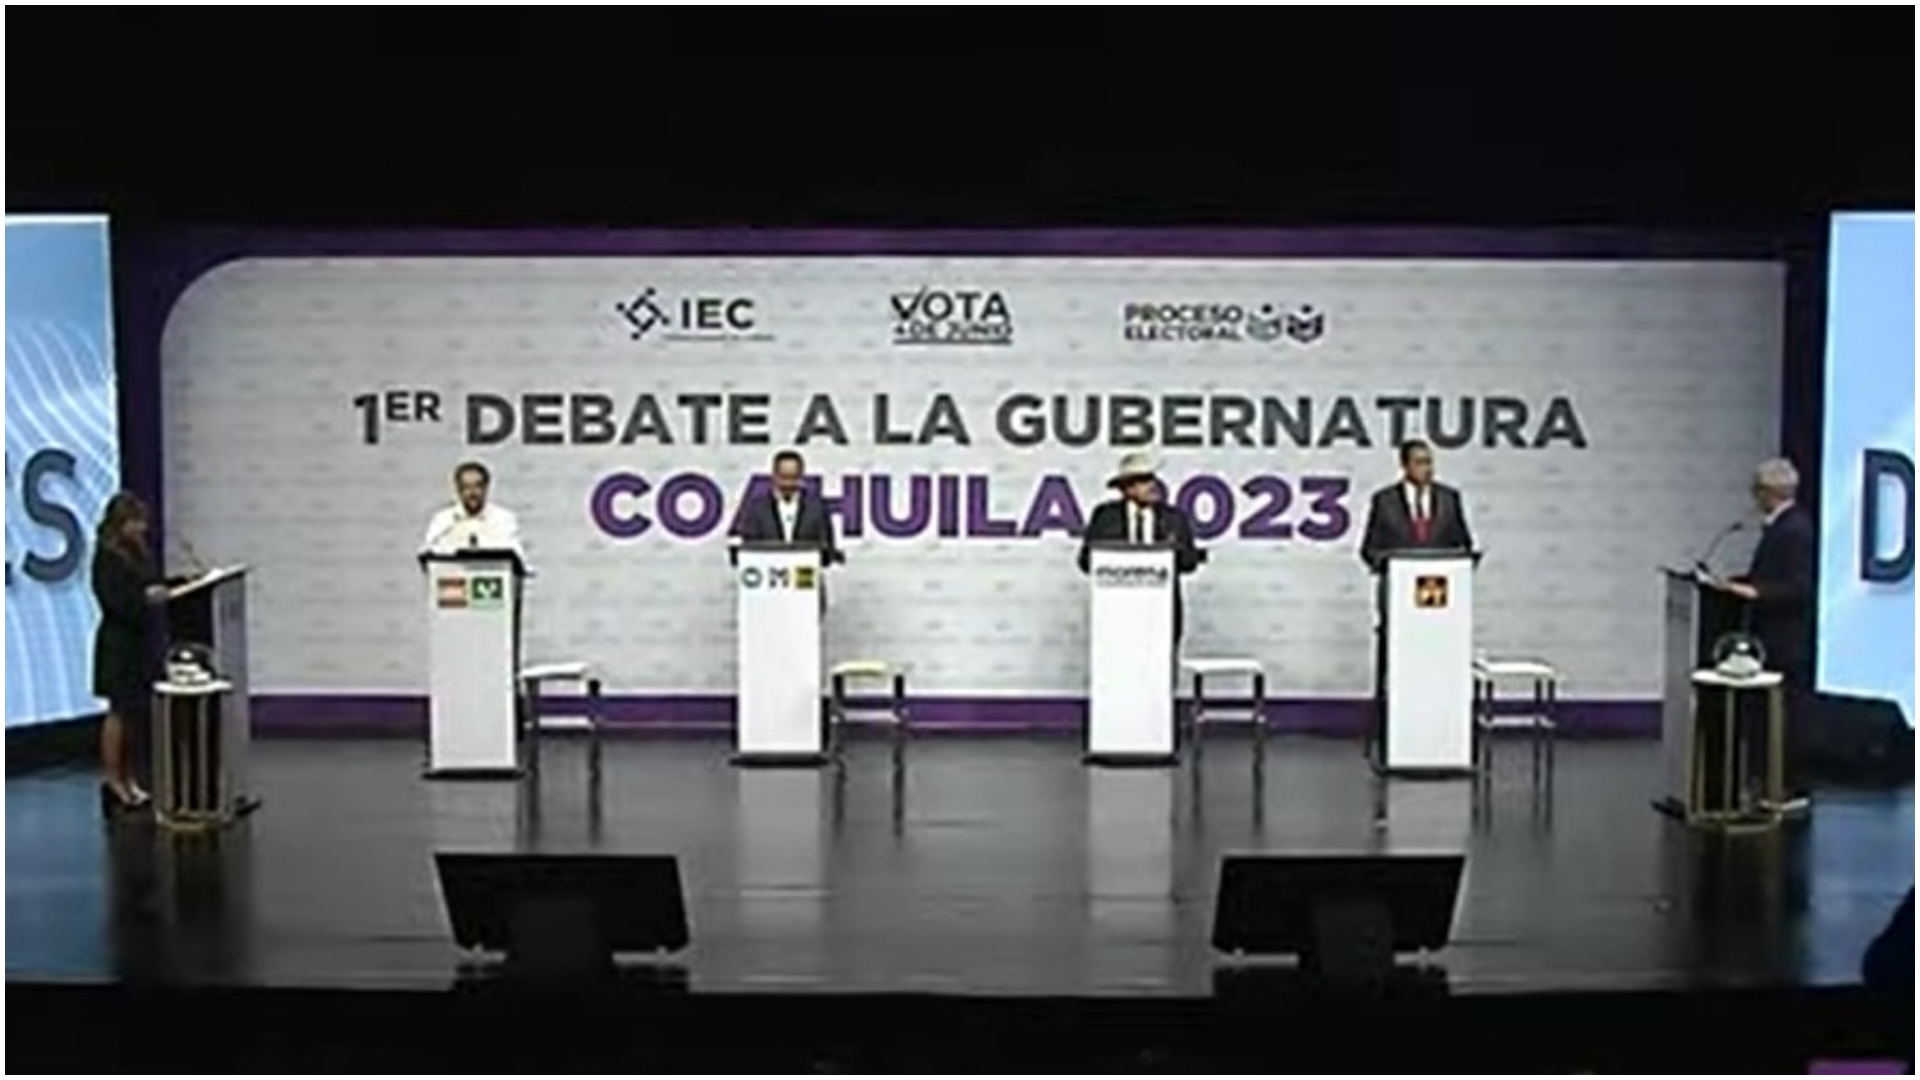 Los candidatos recibieron abucheos y porras durante el debate en Coahuila (YouTube/Instituto Electoral de Coahuila)